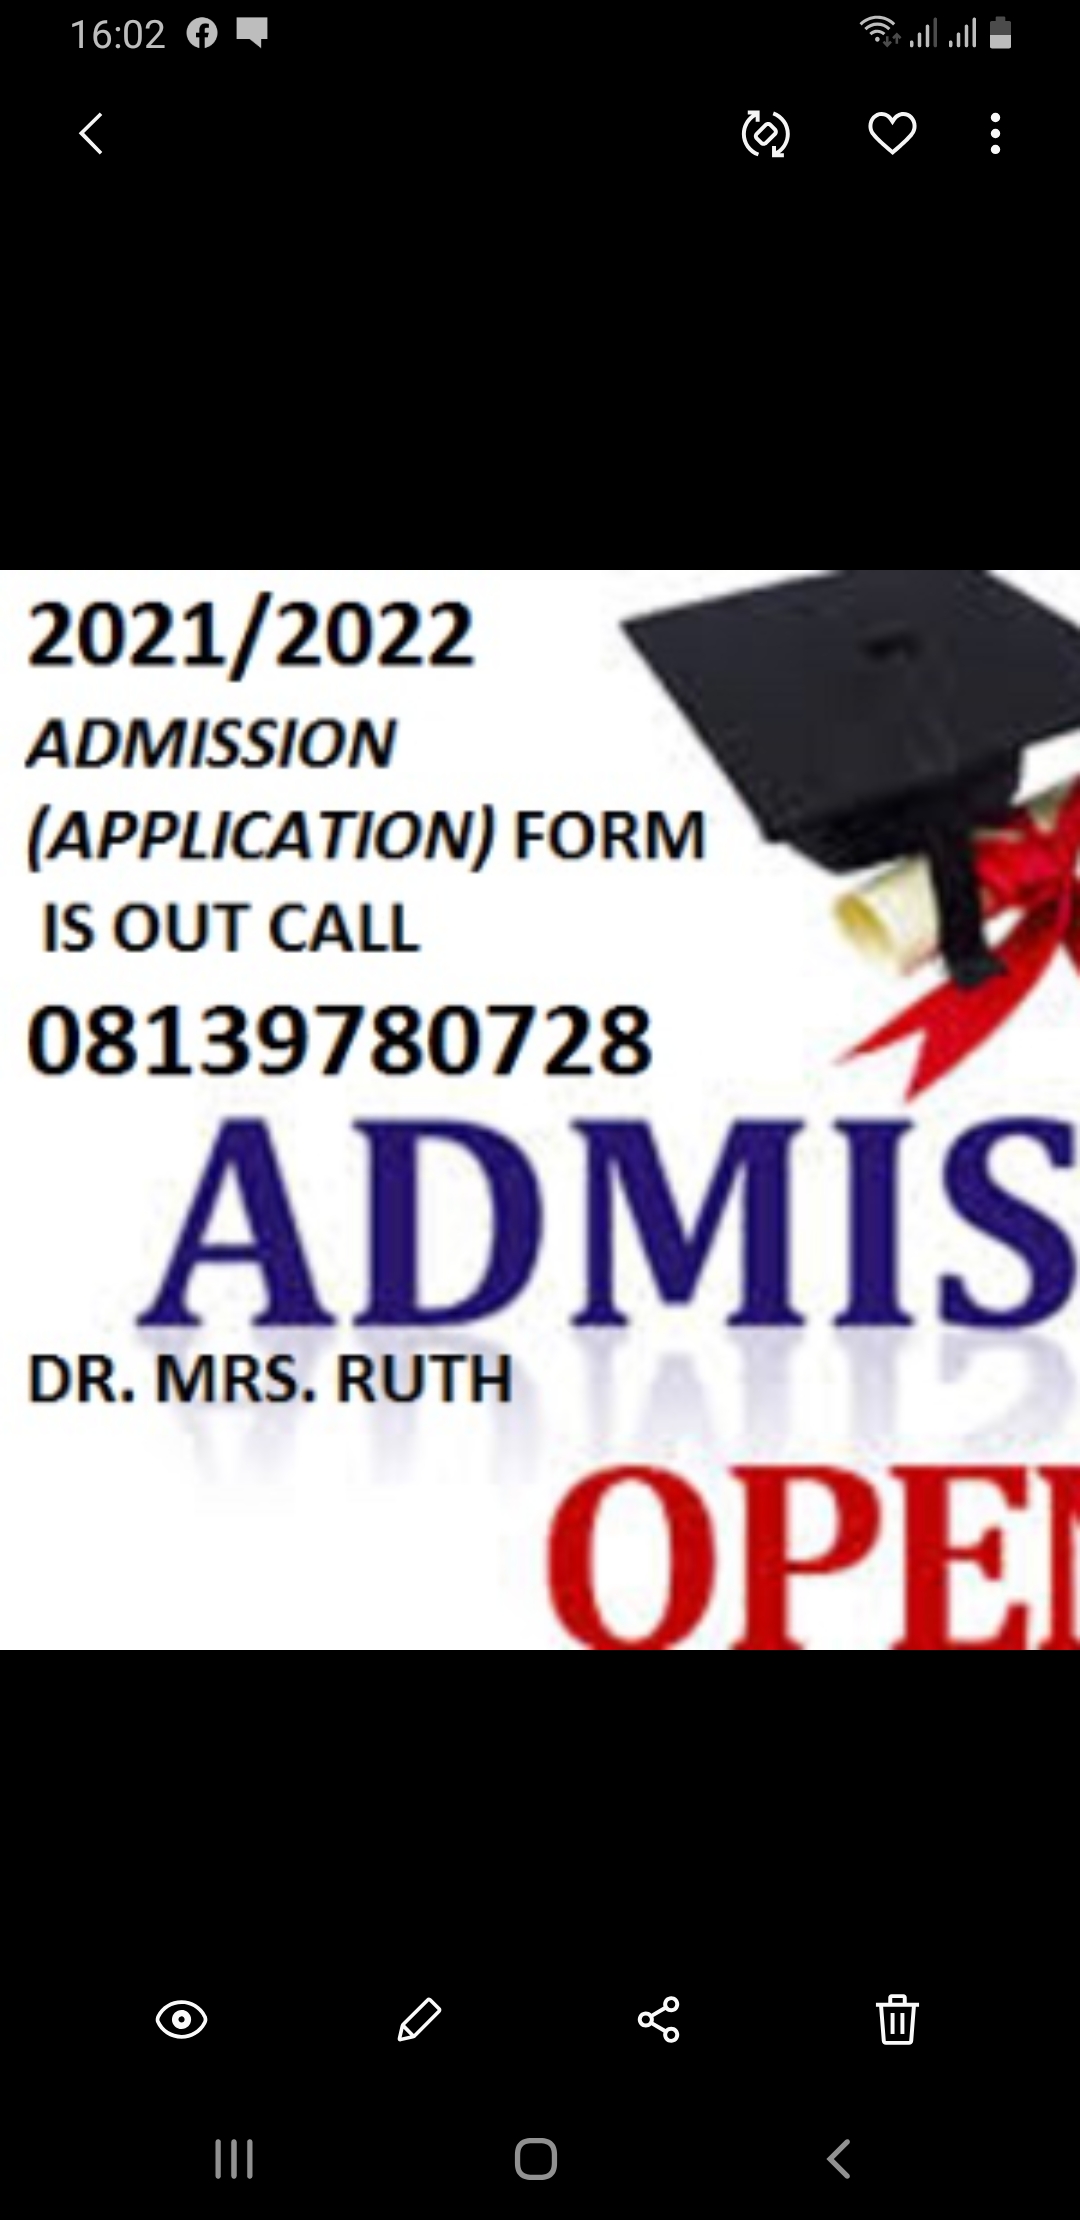 School of Nursing, (SON) Gwagwalada Admission Form is out call 08139780728